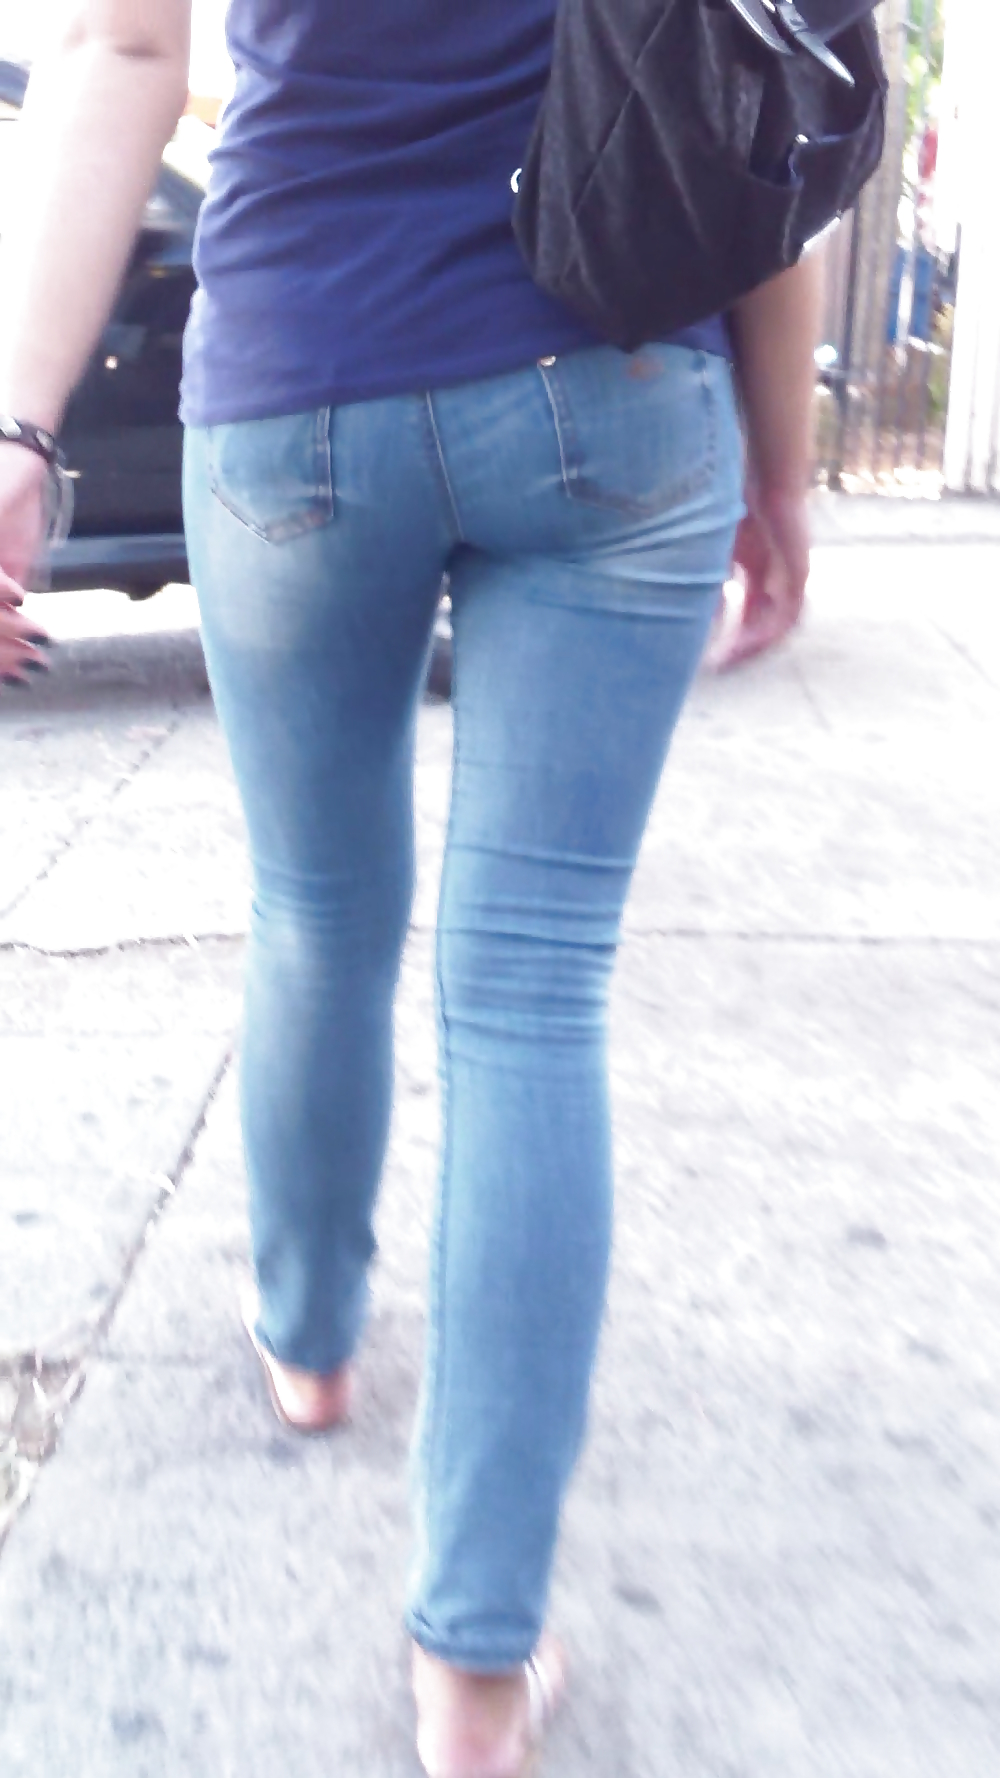 Long tall teen sexy ass & butt in jeans #21780735